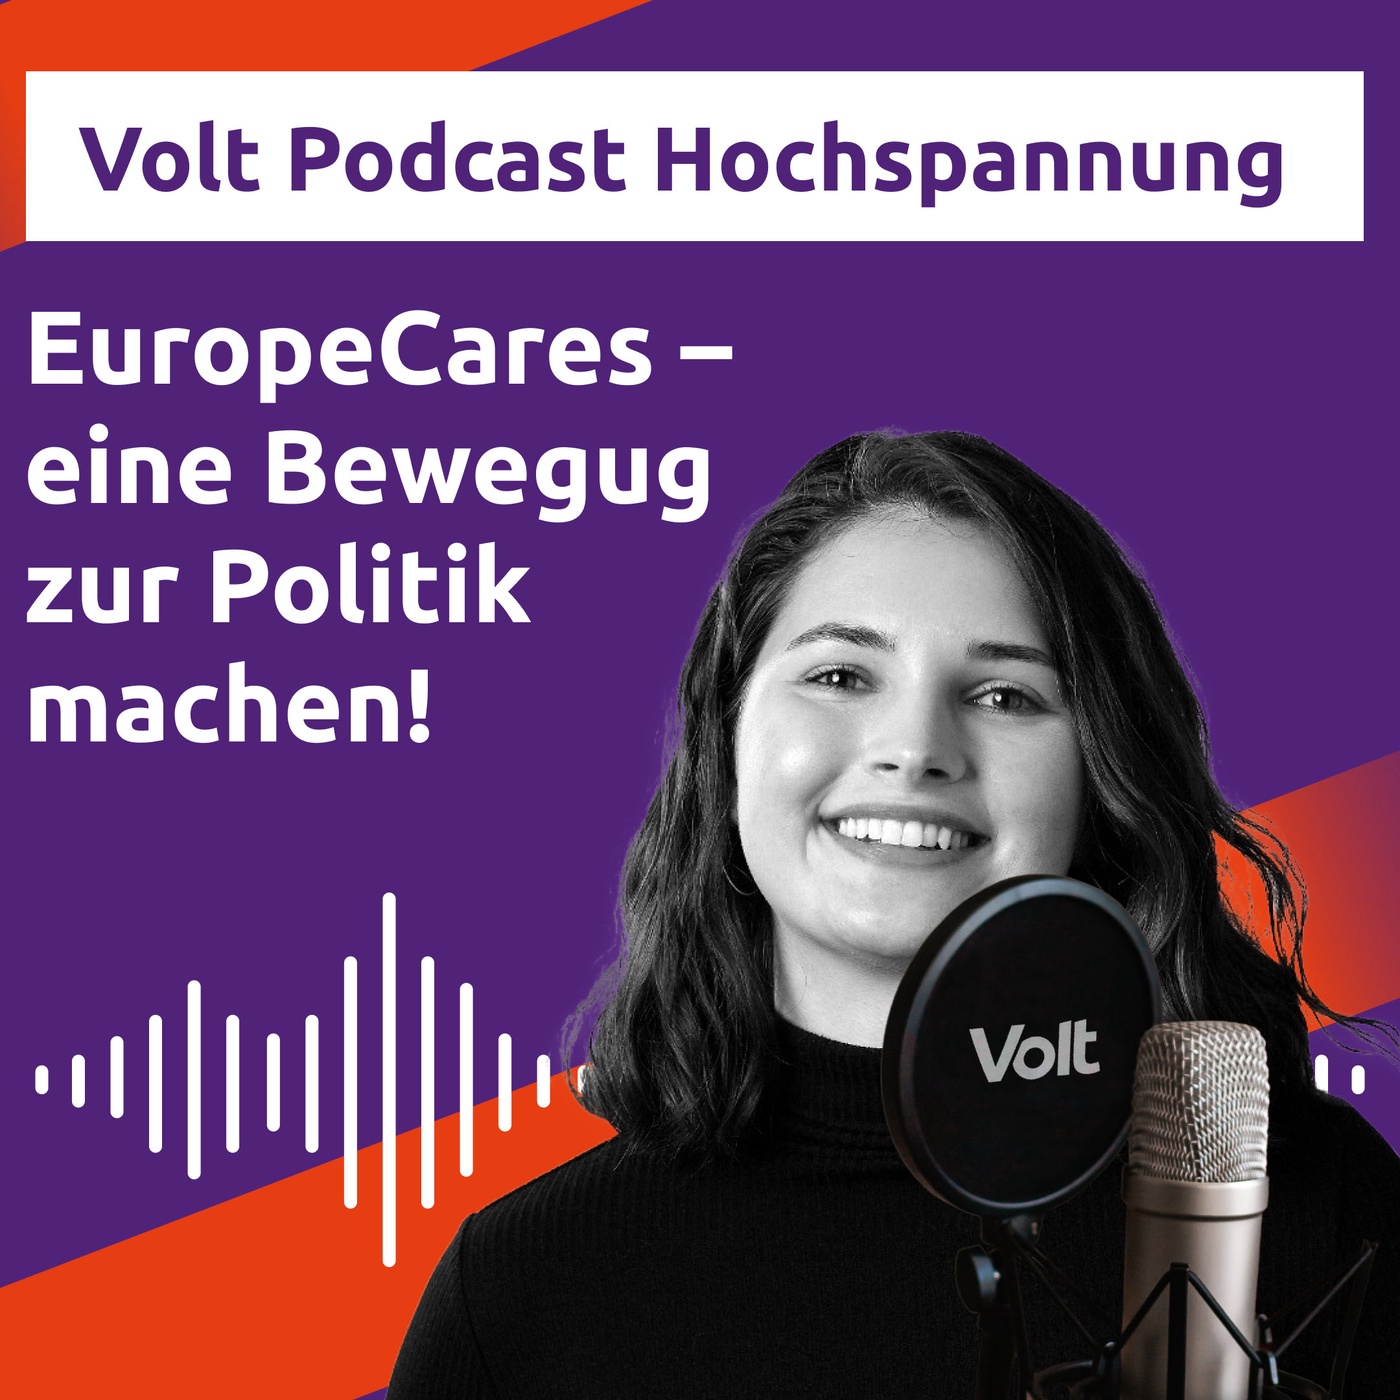 EuropeCares - eine Bewegung zur Politik machen! - Hochspannung Podcast